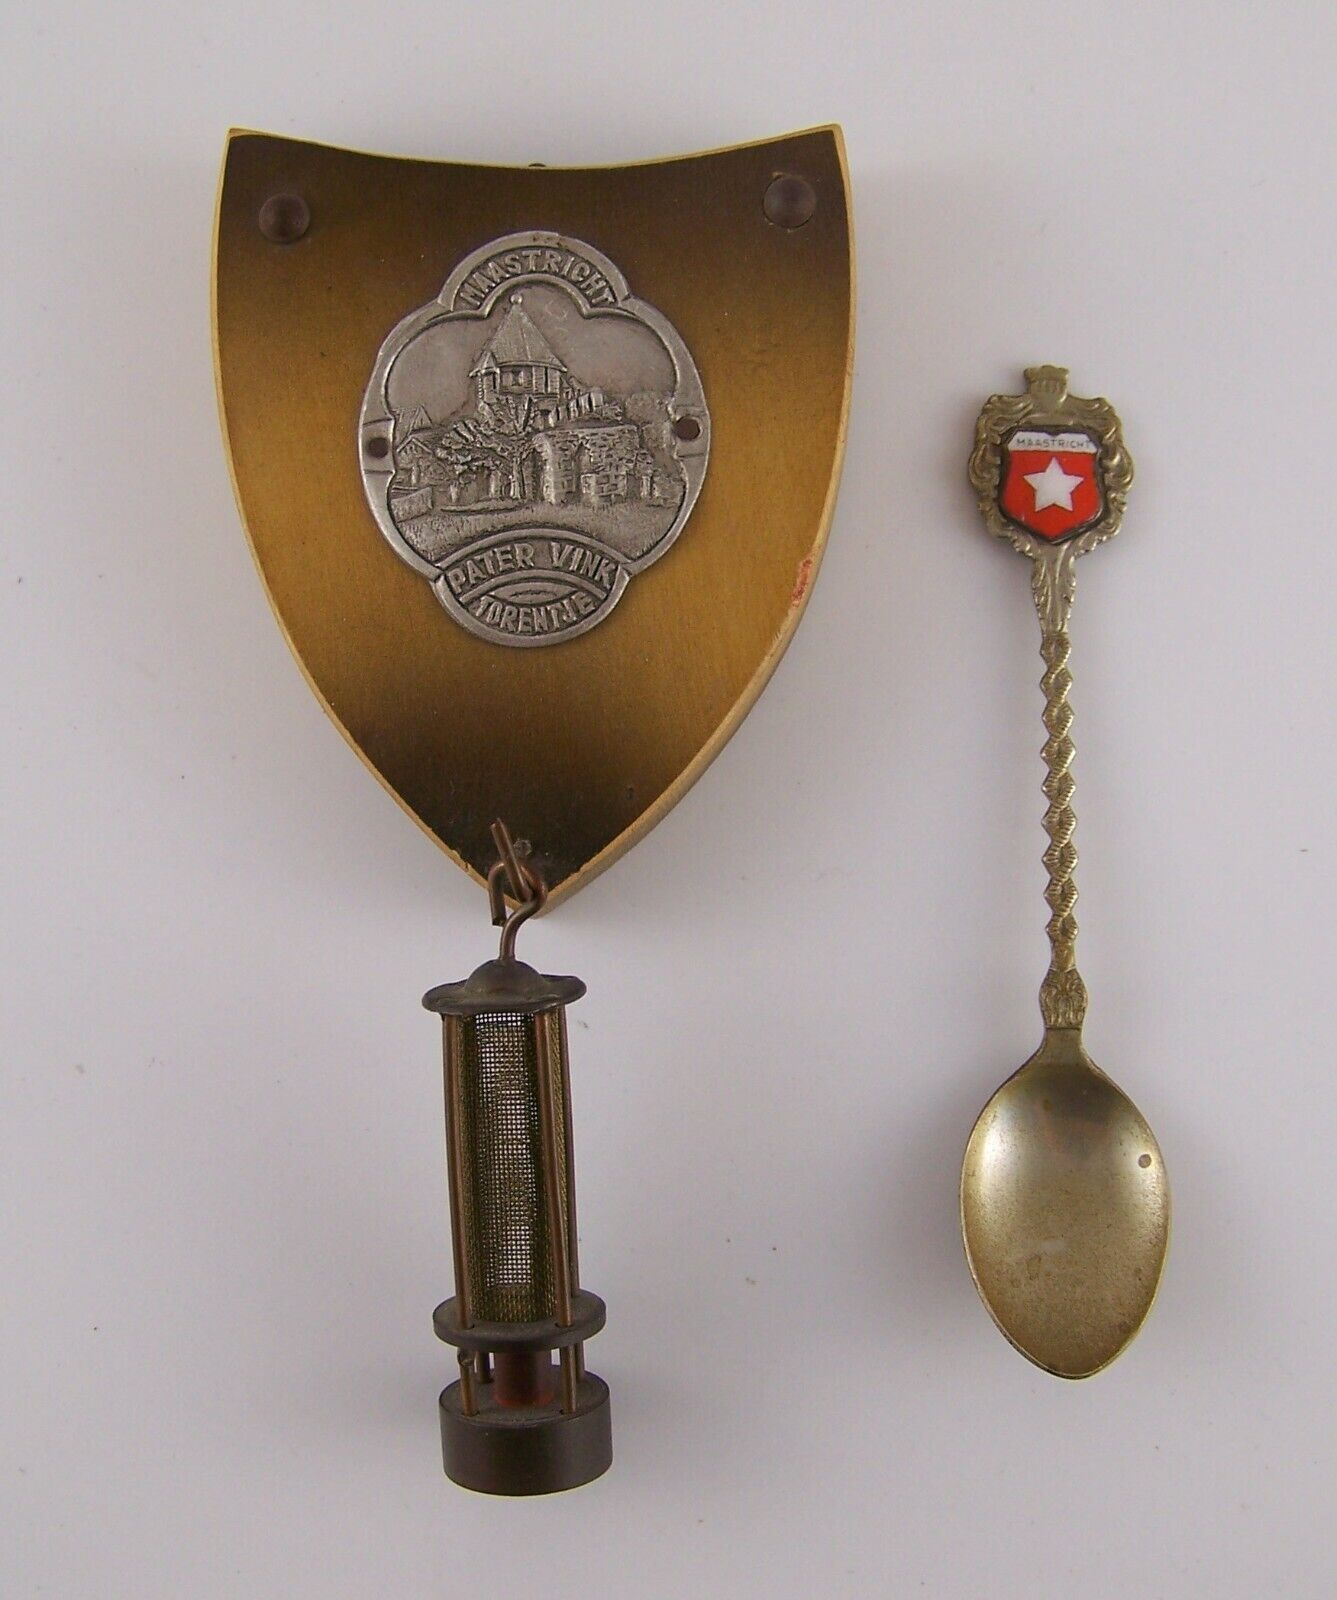 1957 Maastricht Pater Vink Torentje Netherlands Souvenir Hanging Shield & Spoon